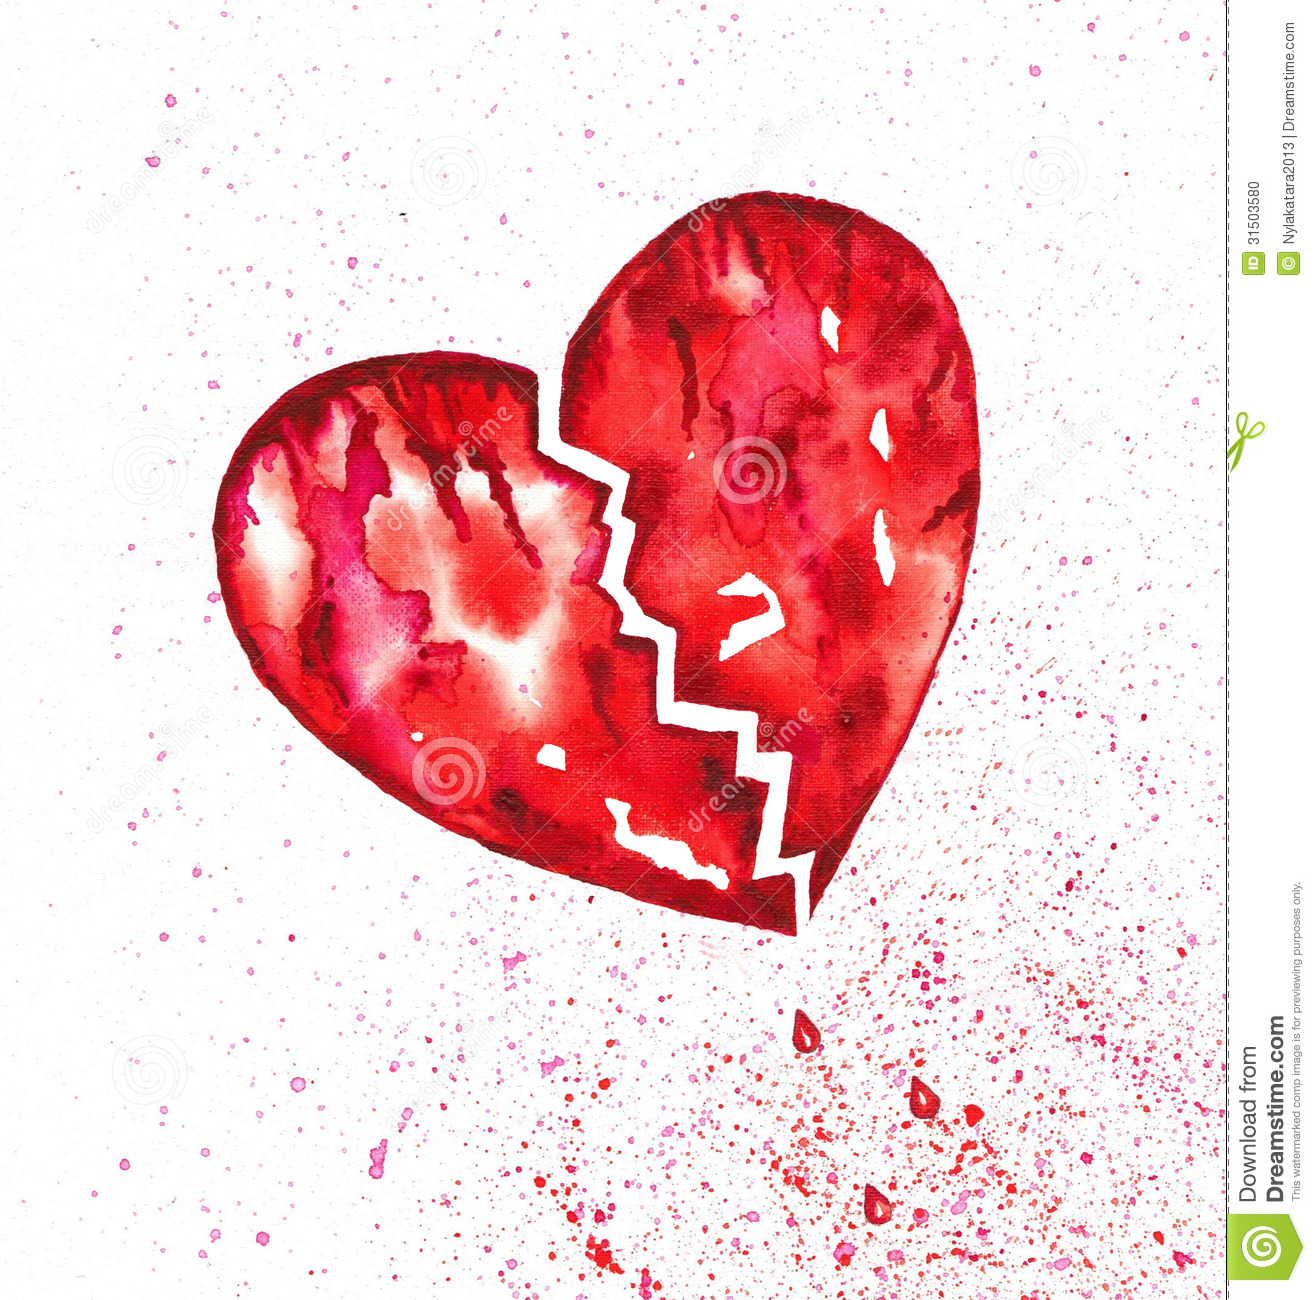 Broken Bleeding Heart With Splatter Watercolor Stock Photo Image 